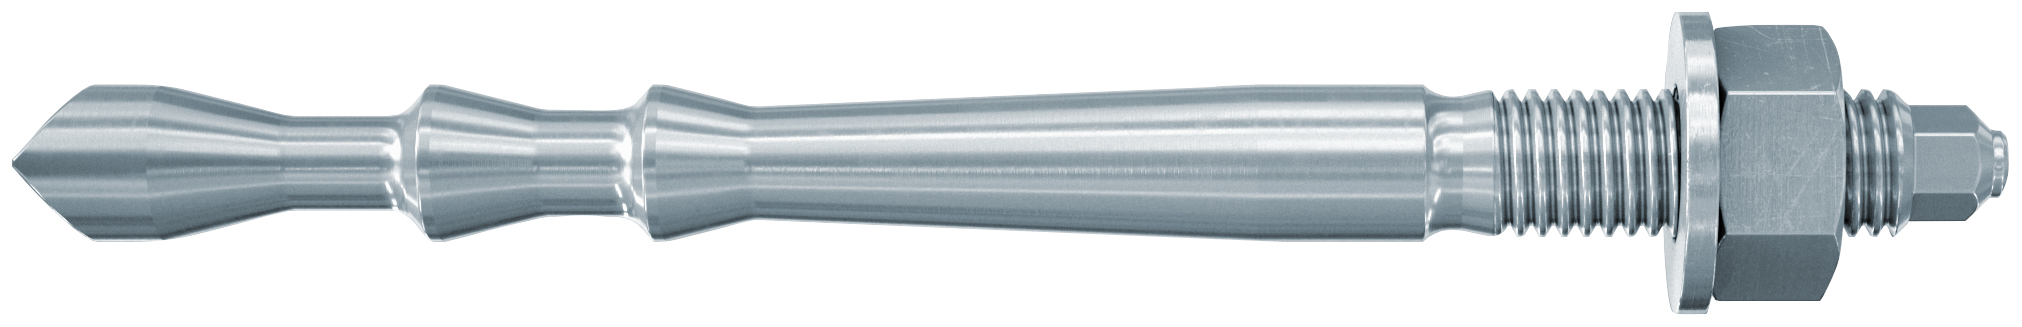 fischer Barra multicono in acciaio FHB II-A L M10x95/20 per ancorante chimico FIS HB (1 Pz.) Barra multicono lunga in acciaio zincato classe 8.8. Massime prestazioni a trazione in calcestruzzo fessurato e a ridotte distanze dai bordi..